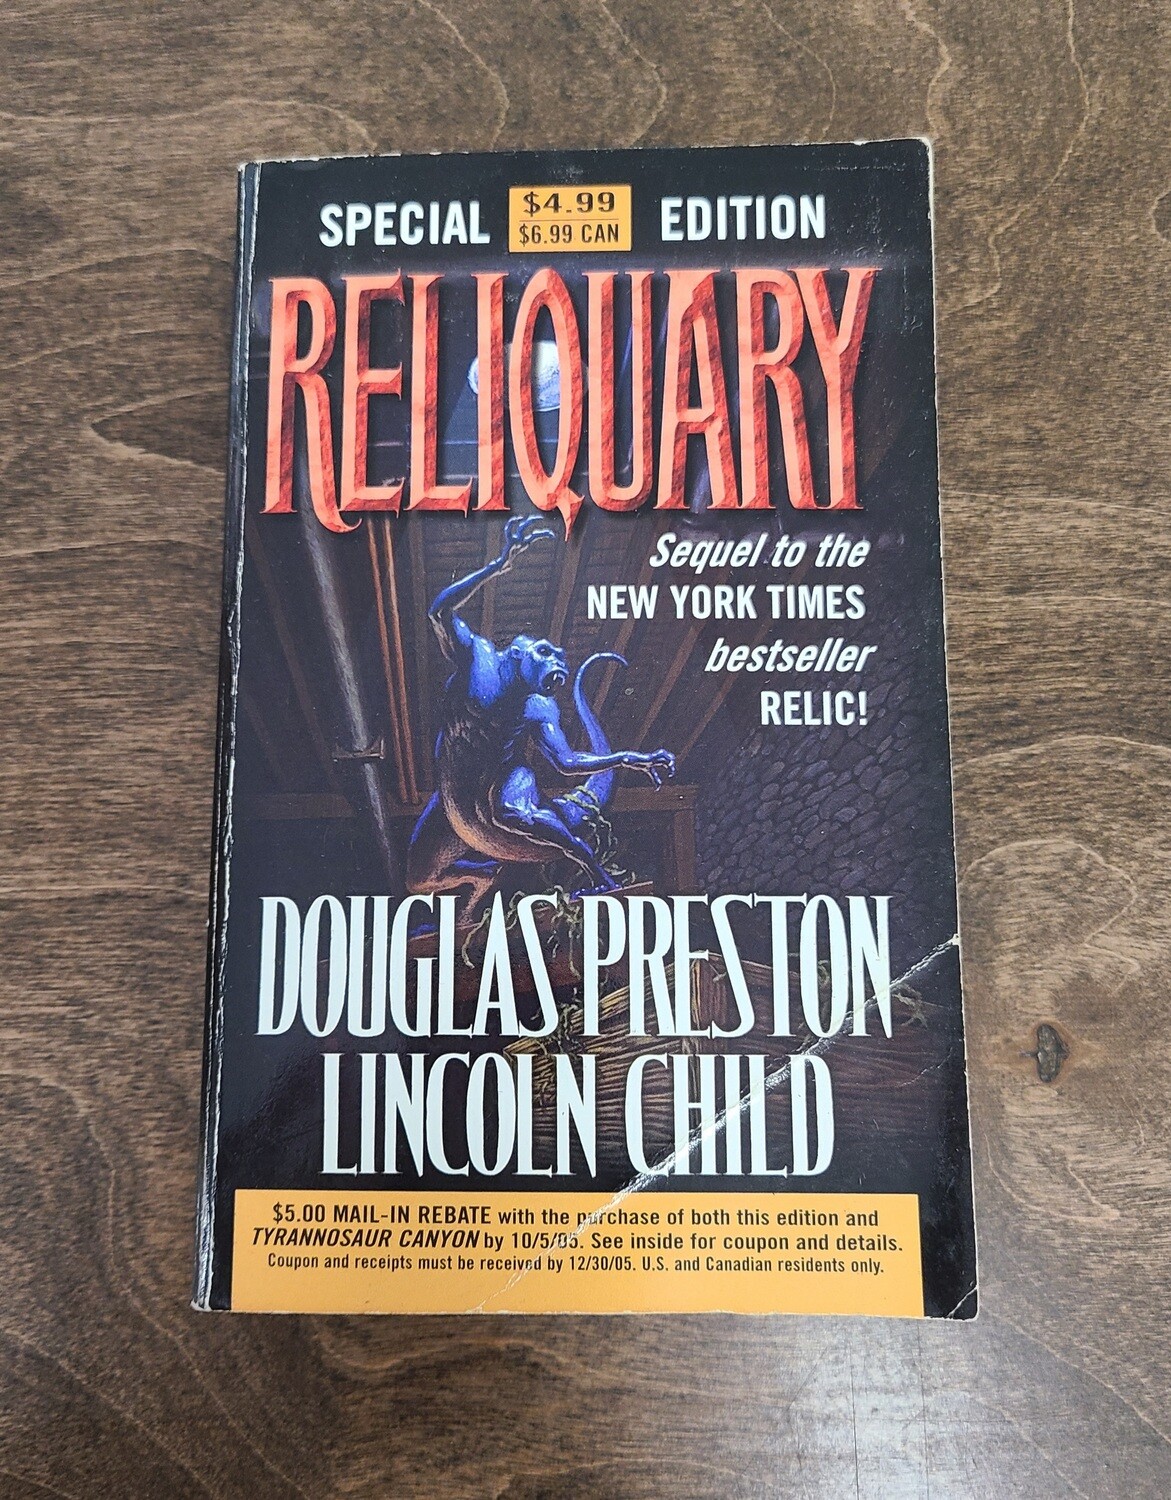 Reliquary by Douglas Preston and Lincoln Child